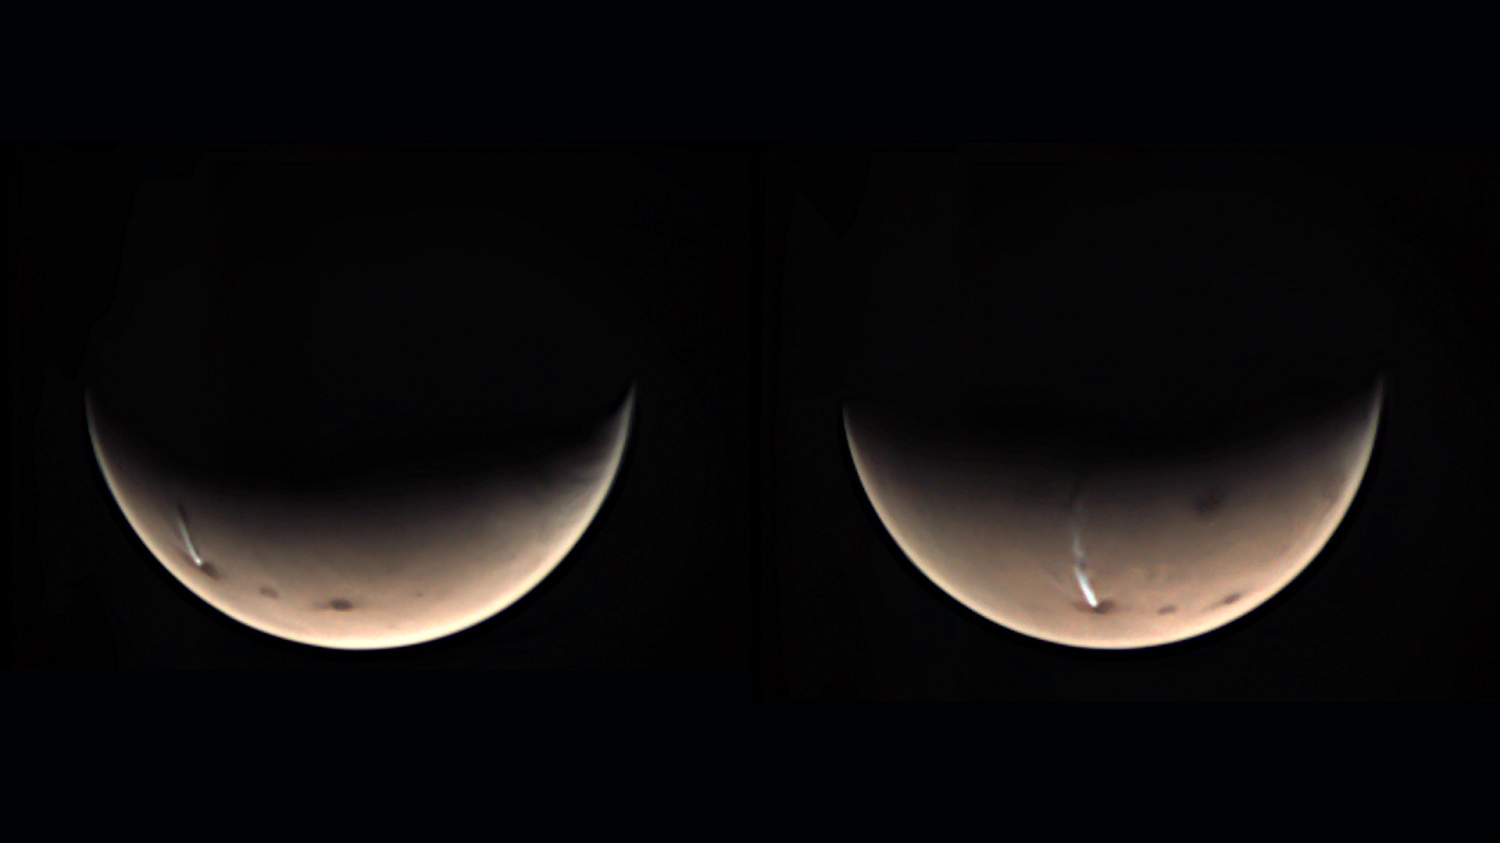 הענן המוארך במאדים, כפי שצולם בשנה שעברה על ידי המארס אקספרס. הענן הזה נמתח לאורך 1,800 ק"מ. קרדיט: ESA